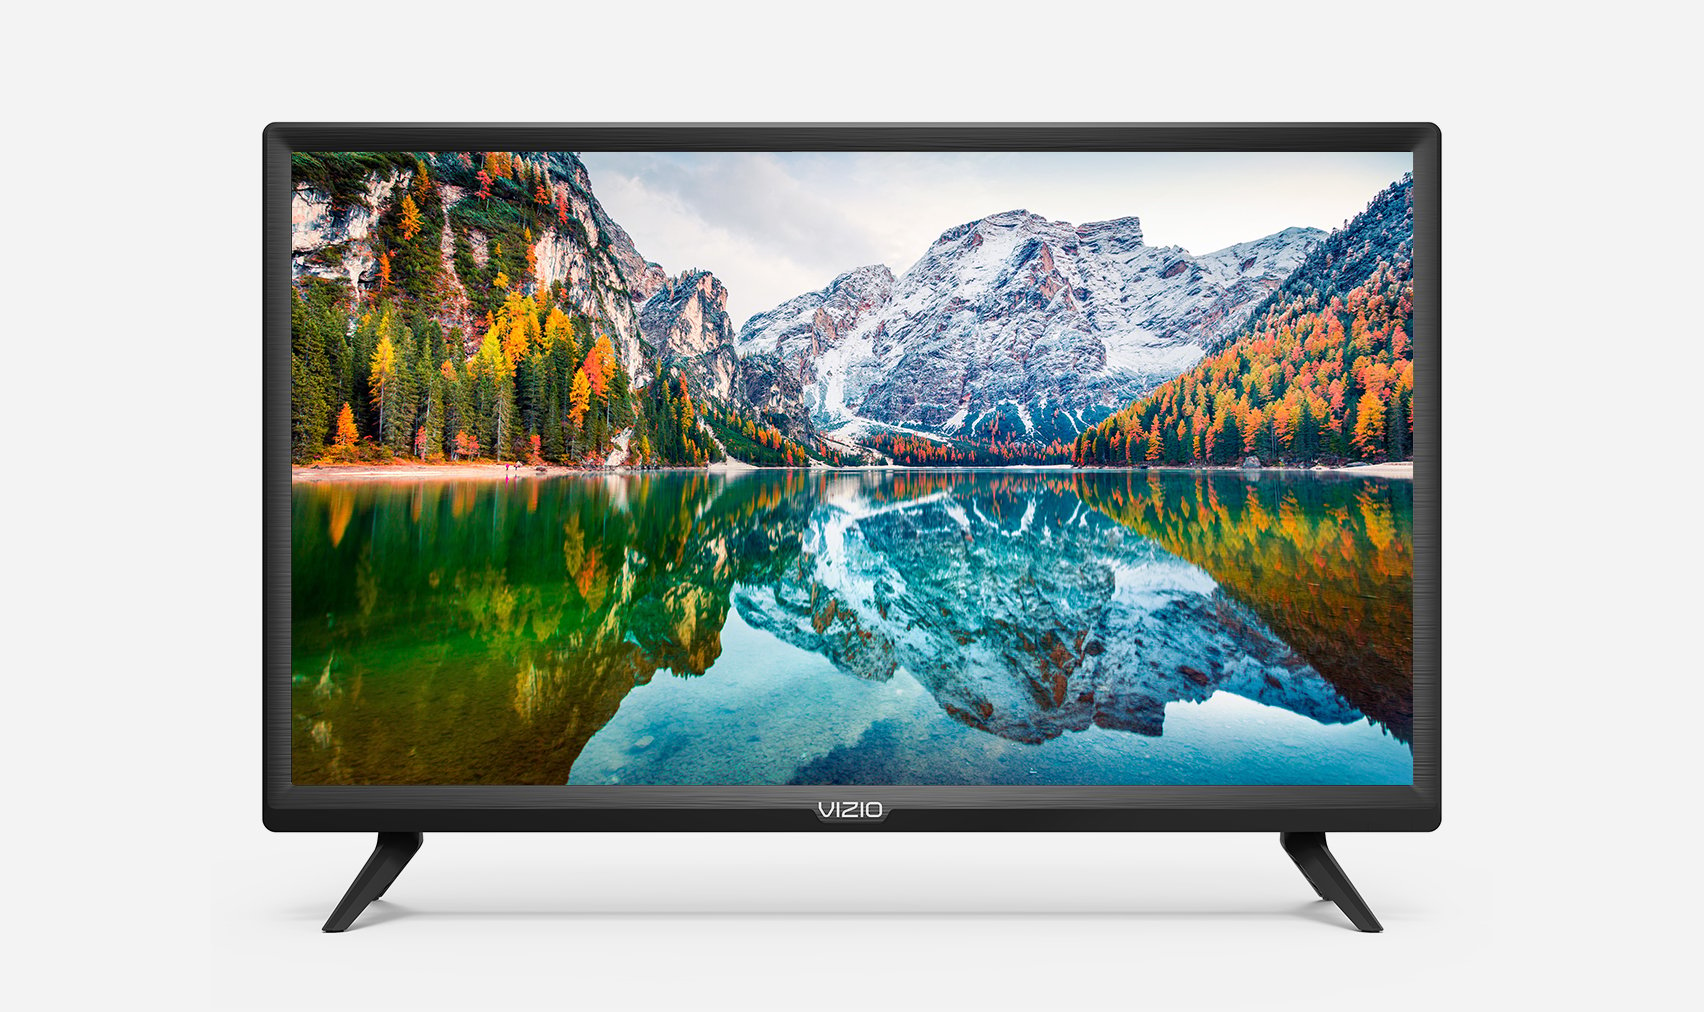 VIZIO Smart TV LED HDTV de 24 pulgadas de la serie D - D24f-G9 (renovado)